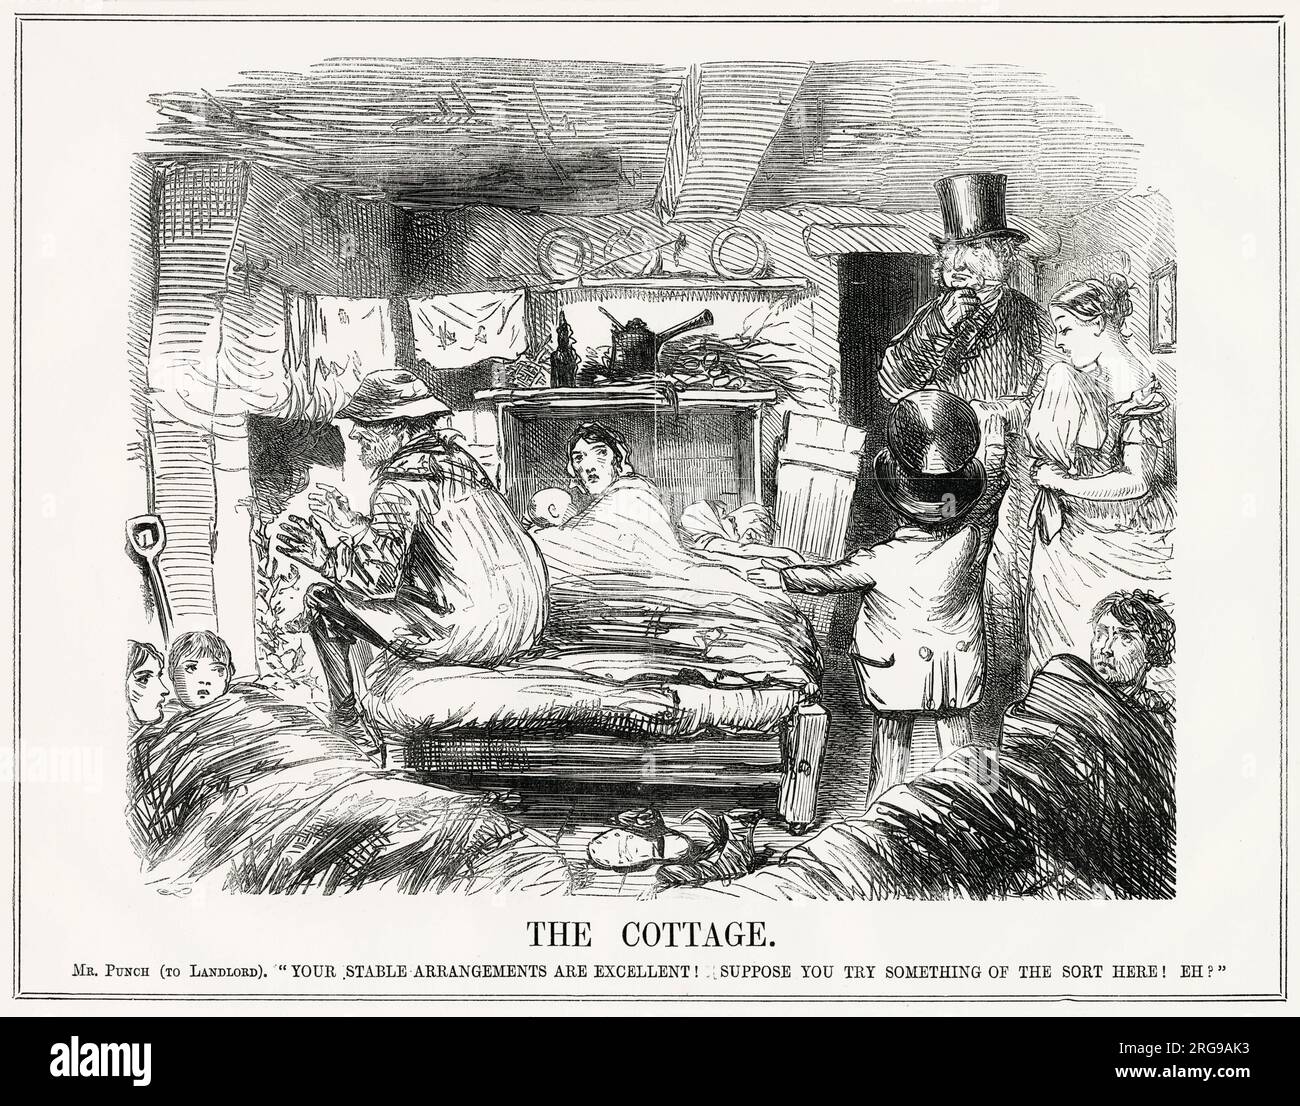 Cartoon, The Cottage -- ein satirischer Kommentar über den schlechten Wohnstandard für Arbeiterfamilien. Mr. Punch sagt dem Vermieter, dass seine Ställe viel besser sind als seine Miete für Menschen. Stockfoto